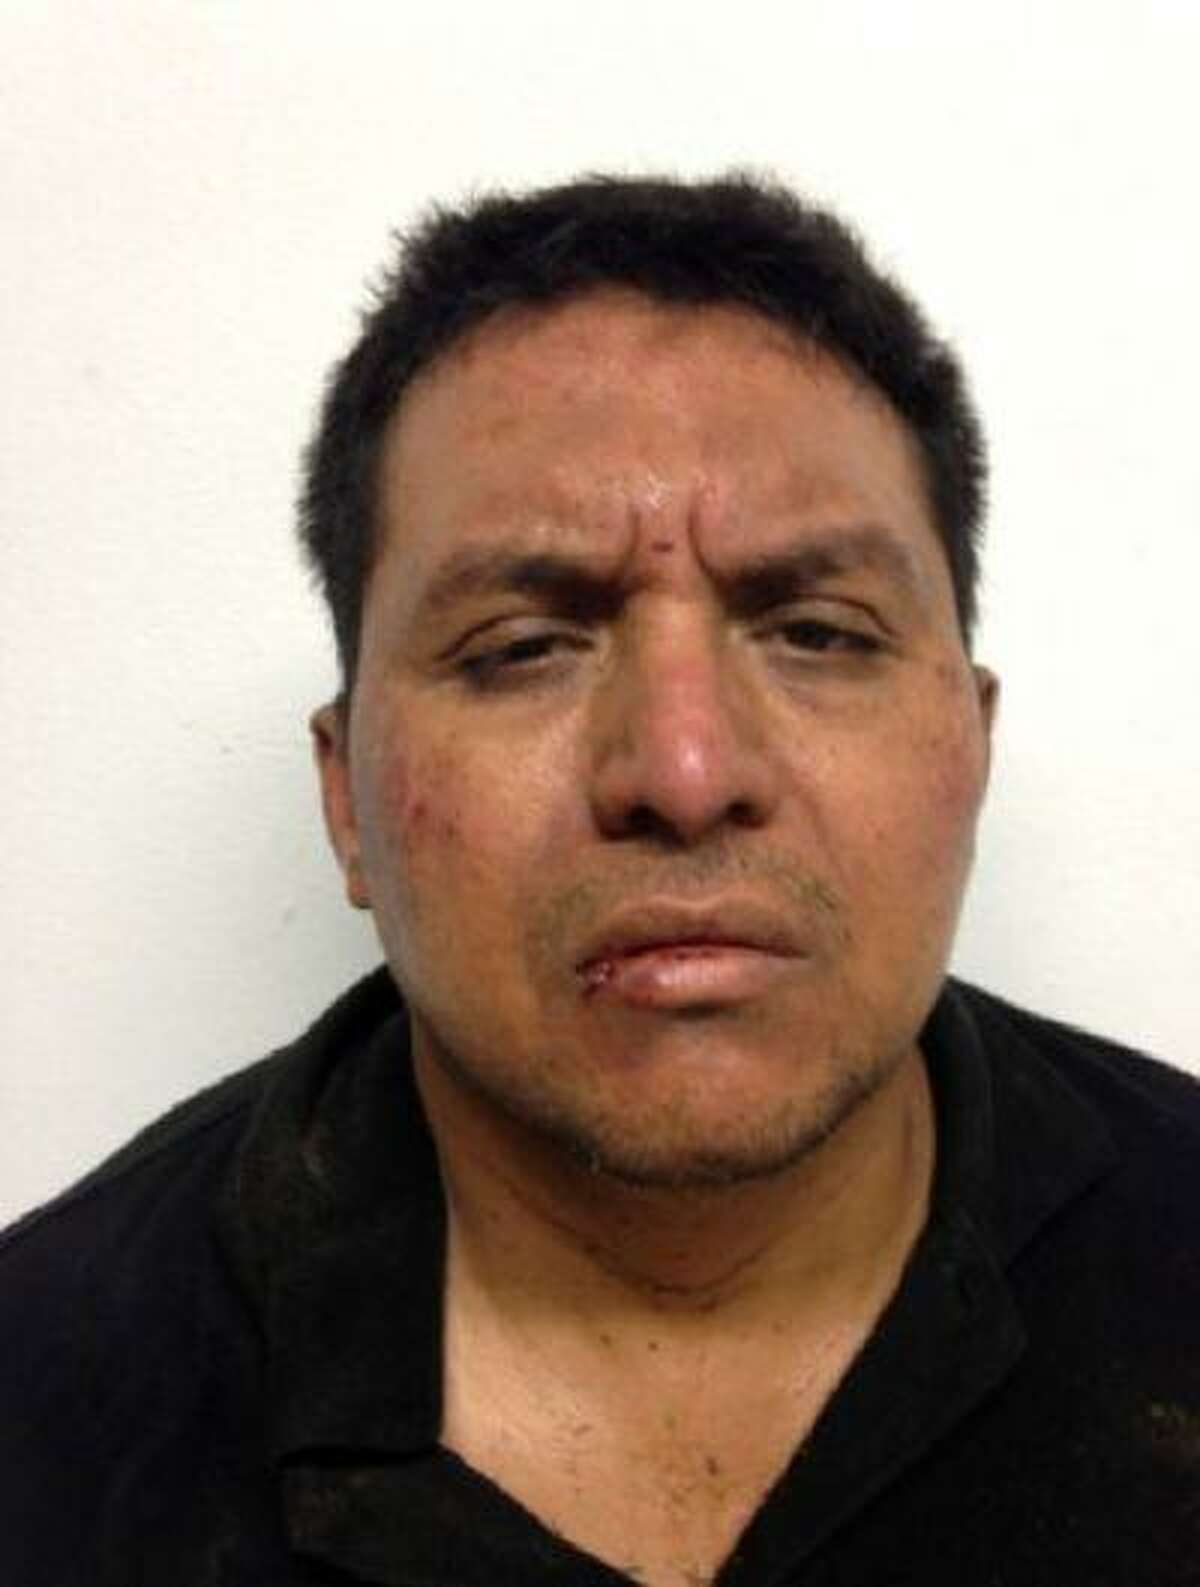 Zetas drug cartel leader Miguel Angel Trevino Morales after his arrest.